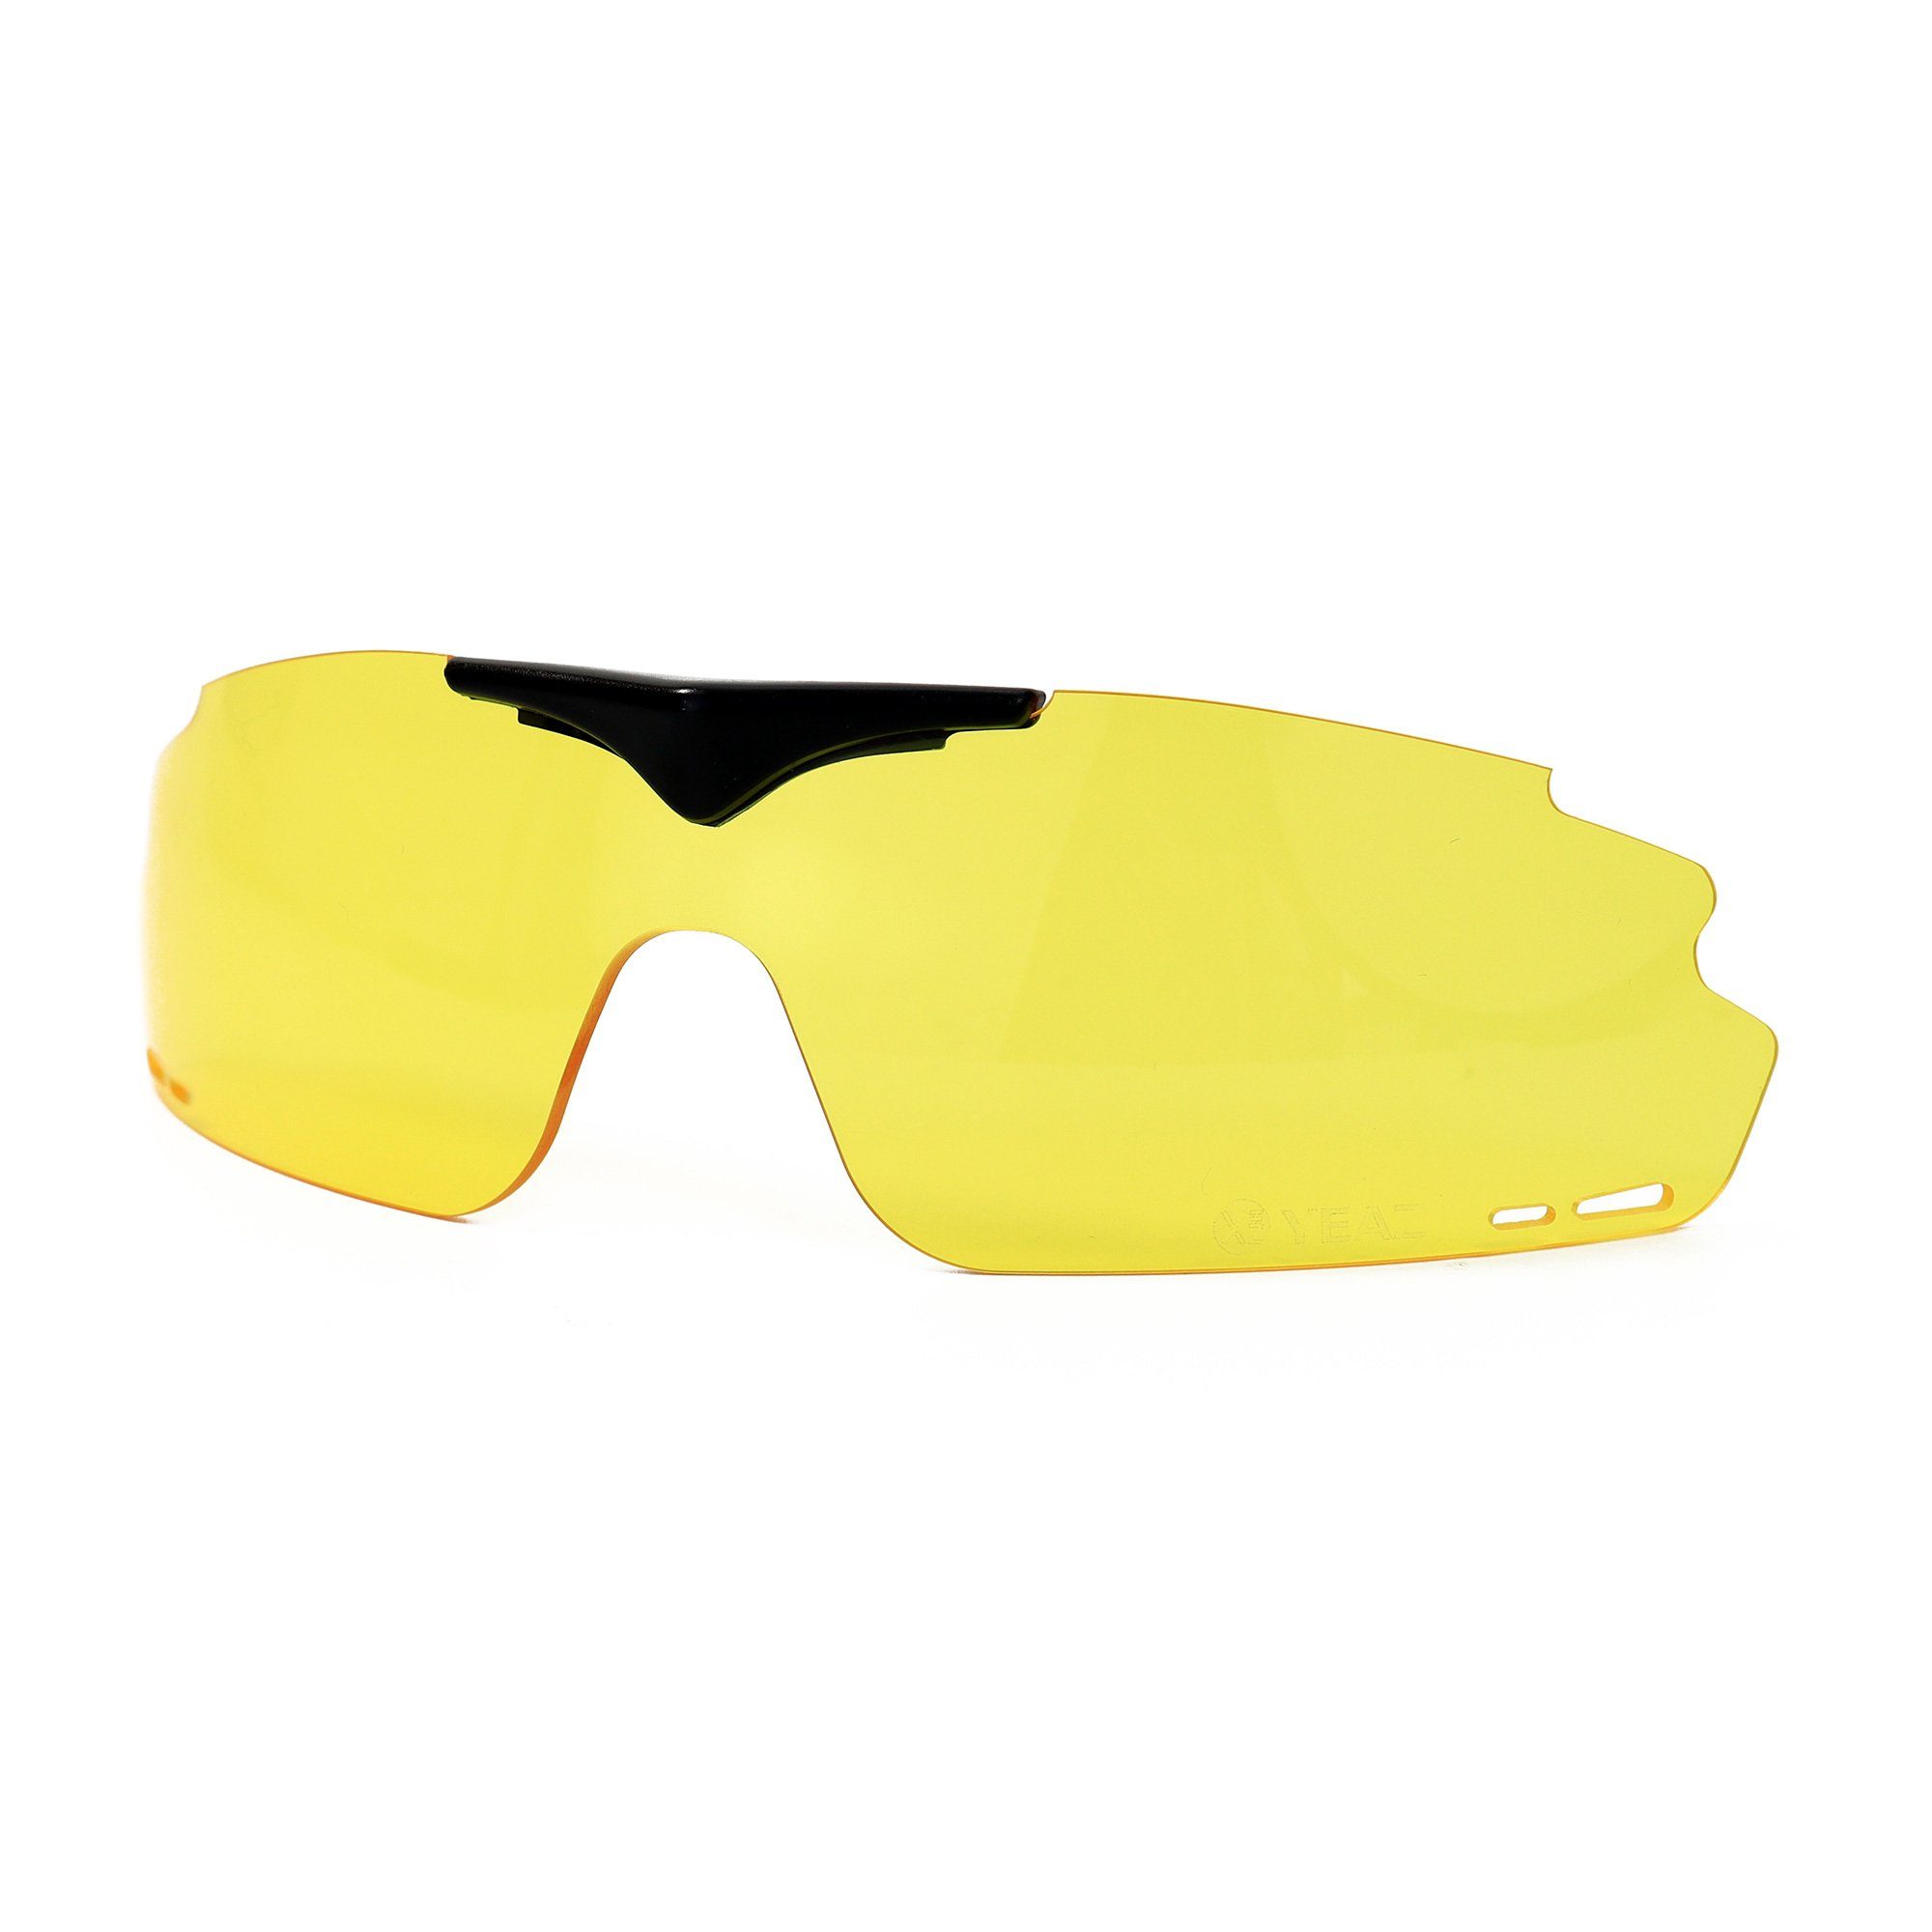 YEAZ Sportbrille SUNUP magnetisches wechselglas cloudy gelb, Magnetisches Wechselglas für SUNUP